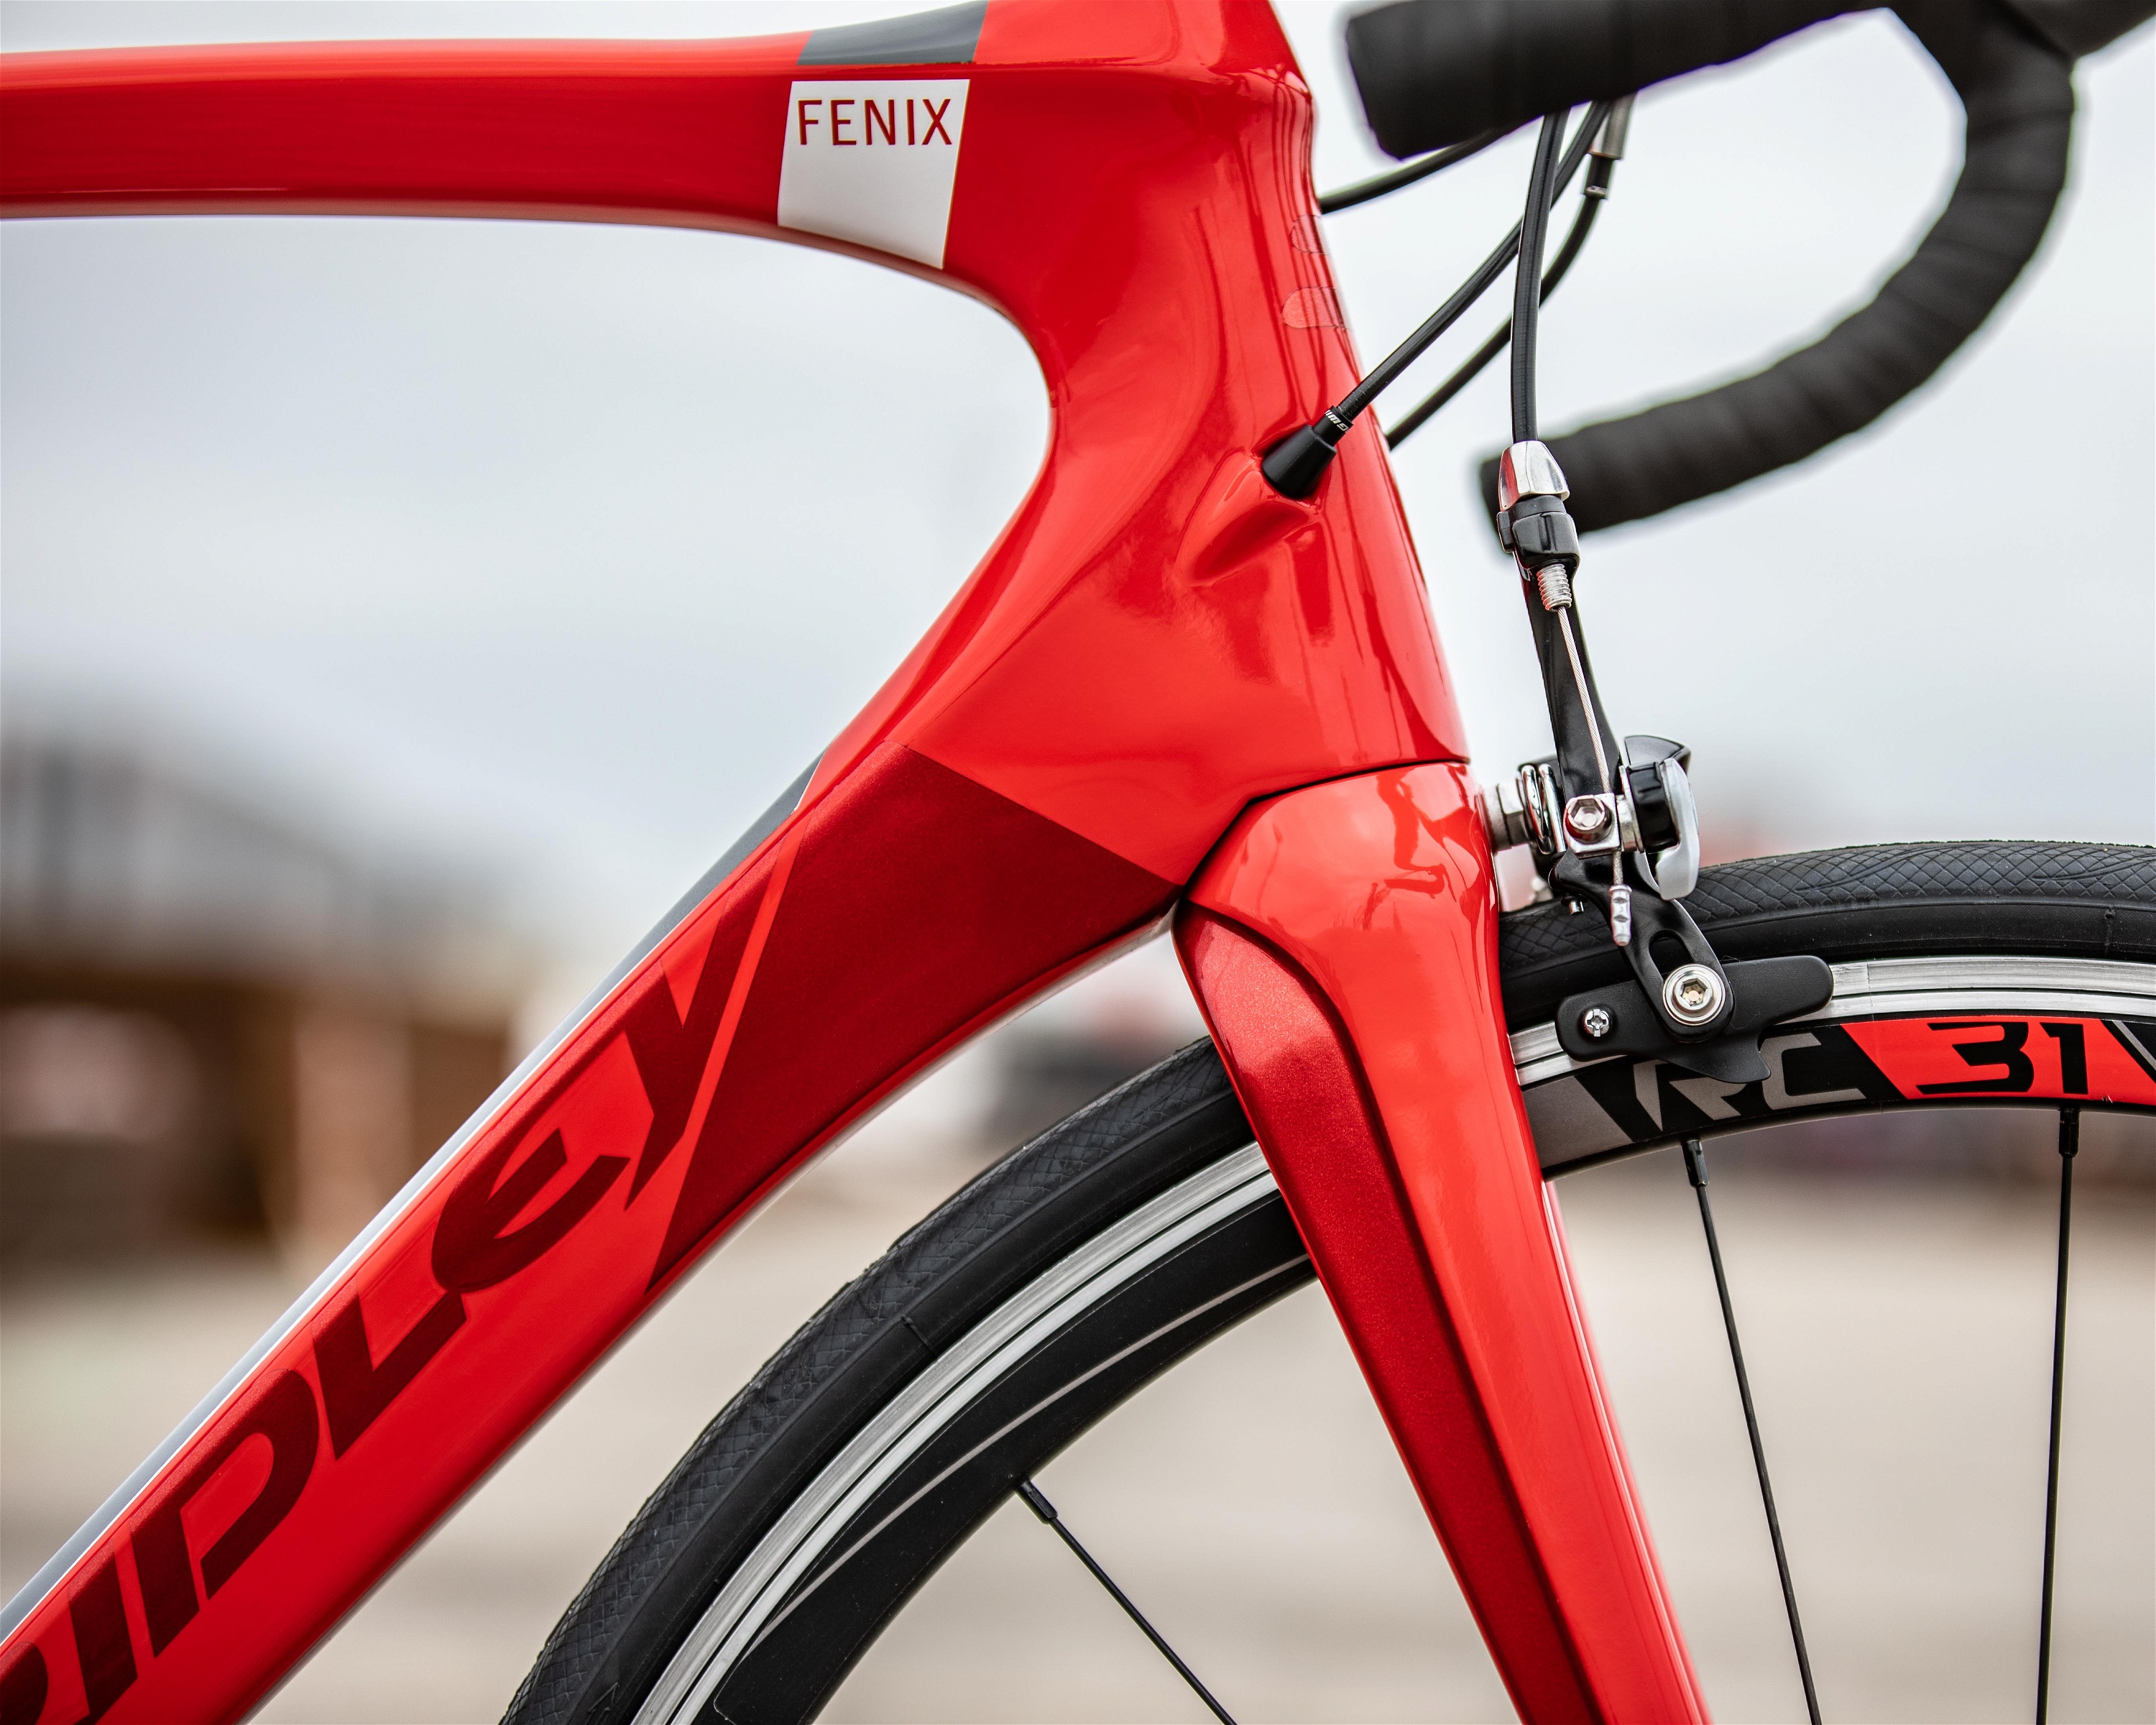 Cykler - Racercykler - Ridley Fenix C Ultegra 2019 - Rød